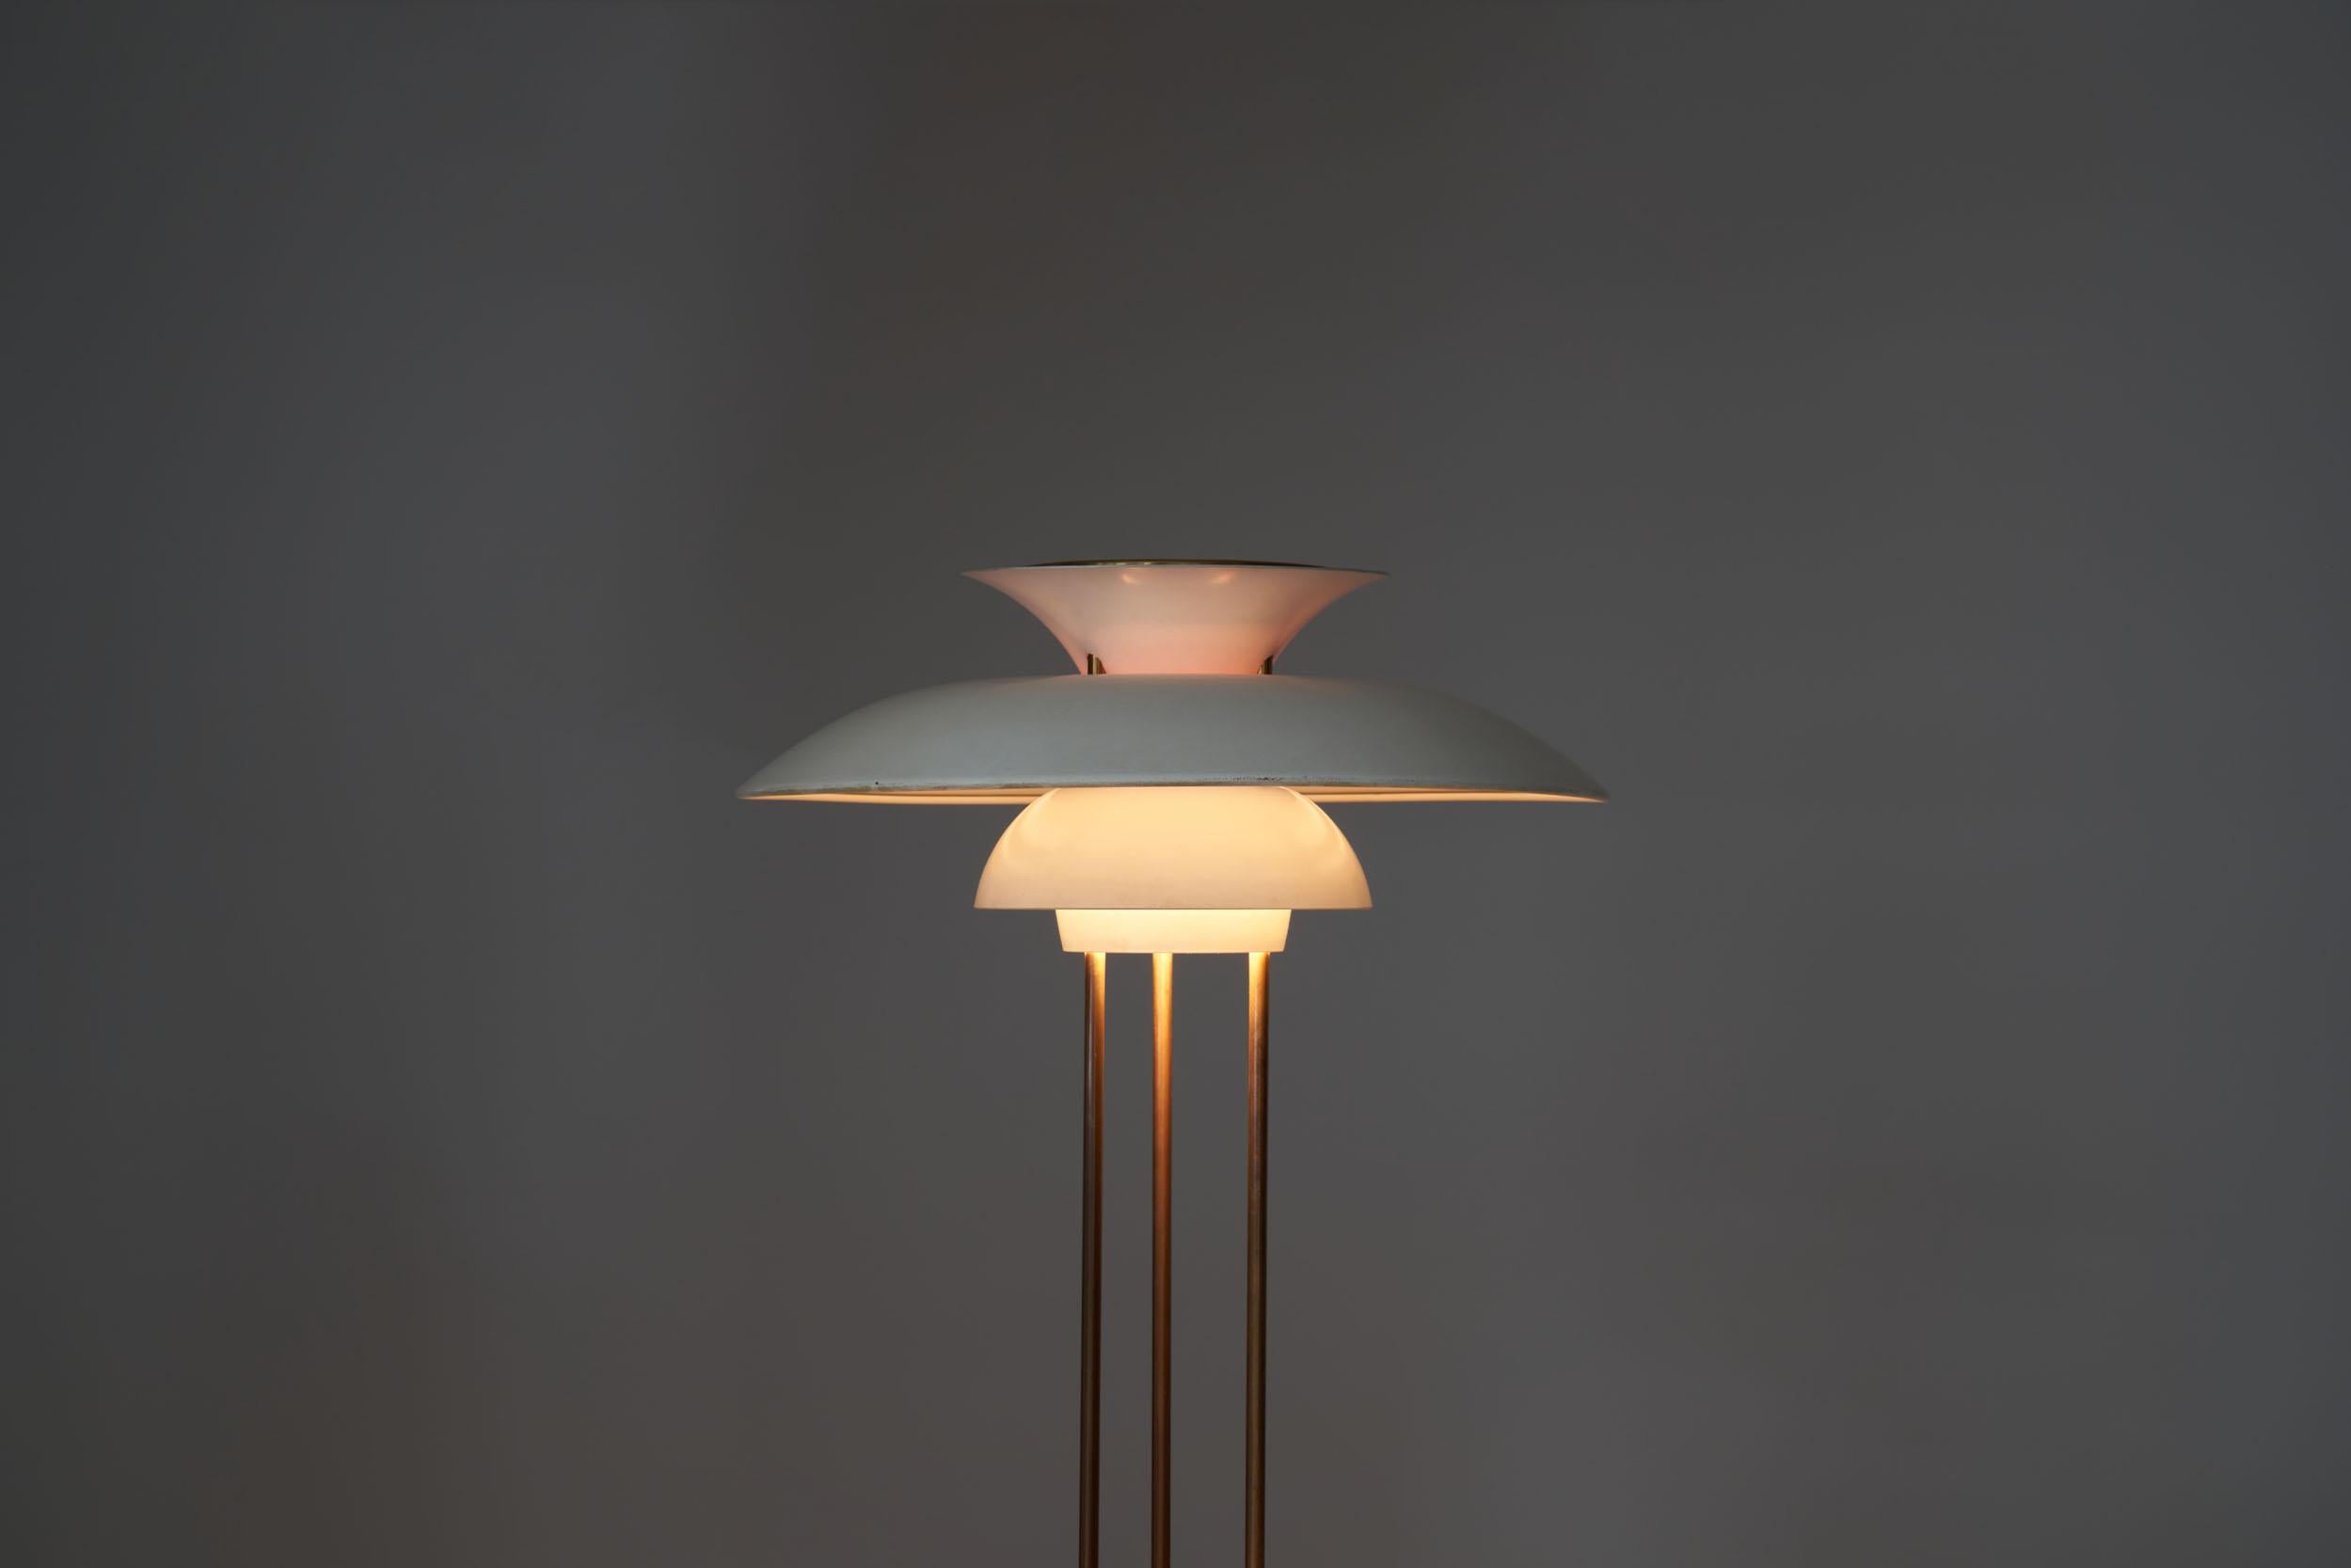 Mid-20th Century Poul Henningsen “PH-5” Table Lamp for Louis Poulsen, Denmark, 1958